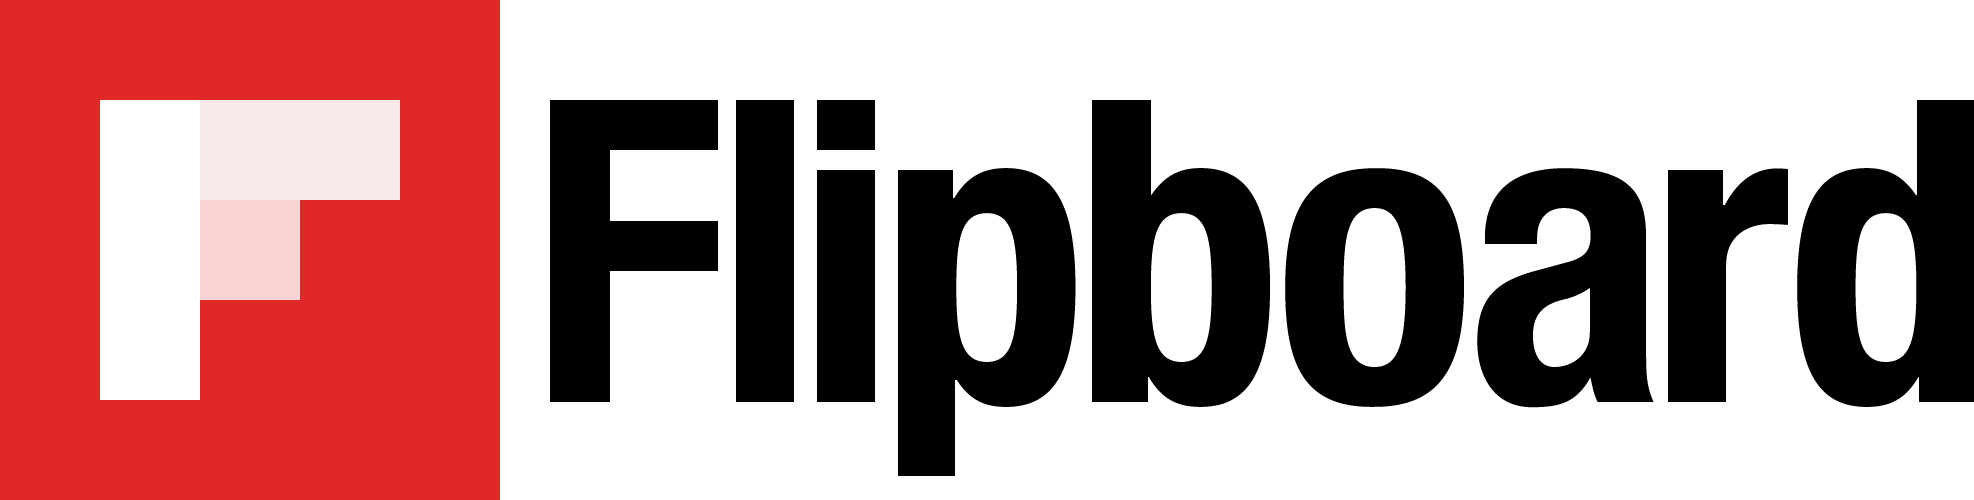 Flipboard Logo - Flipboard logo